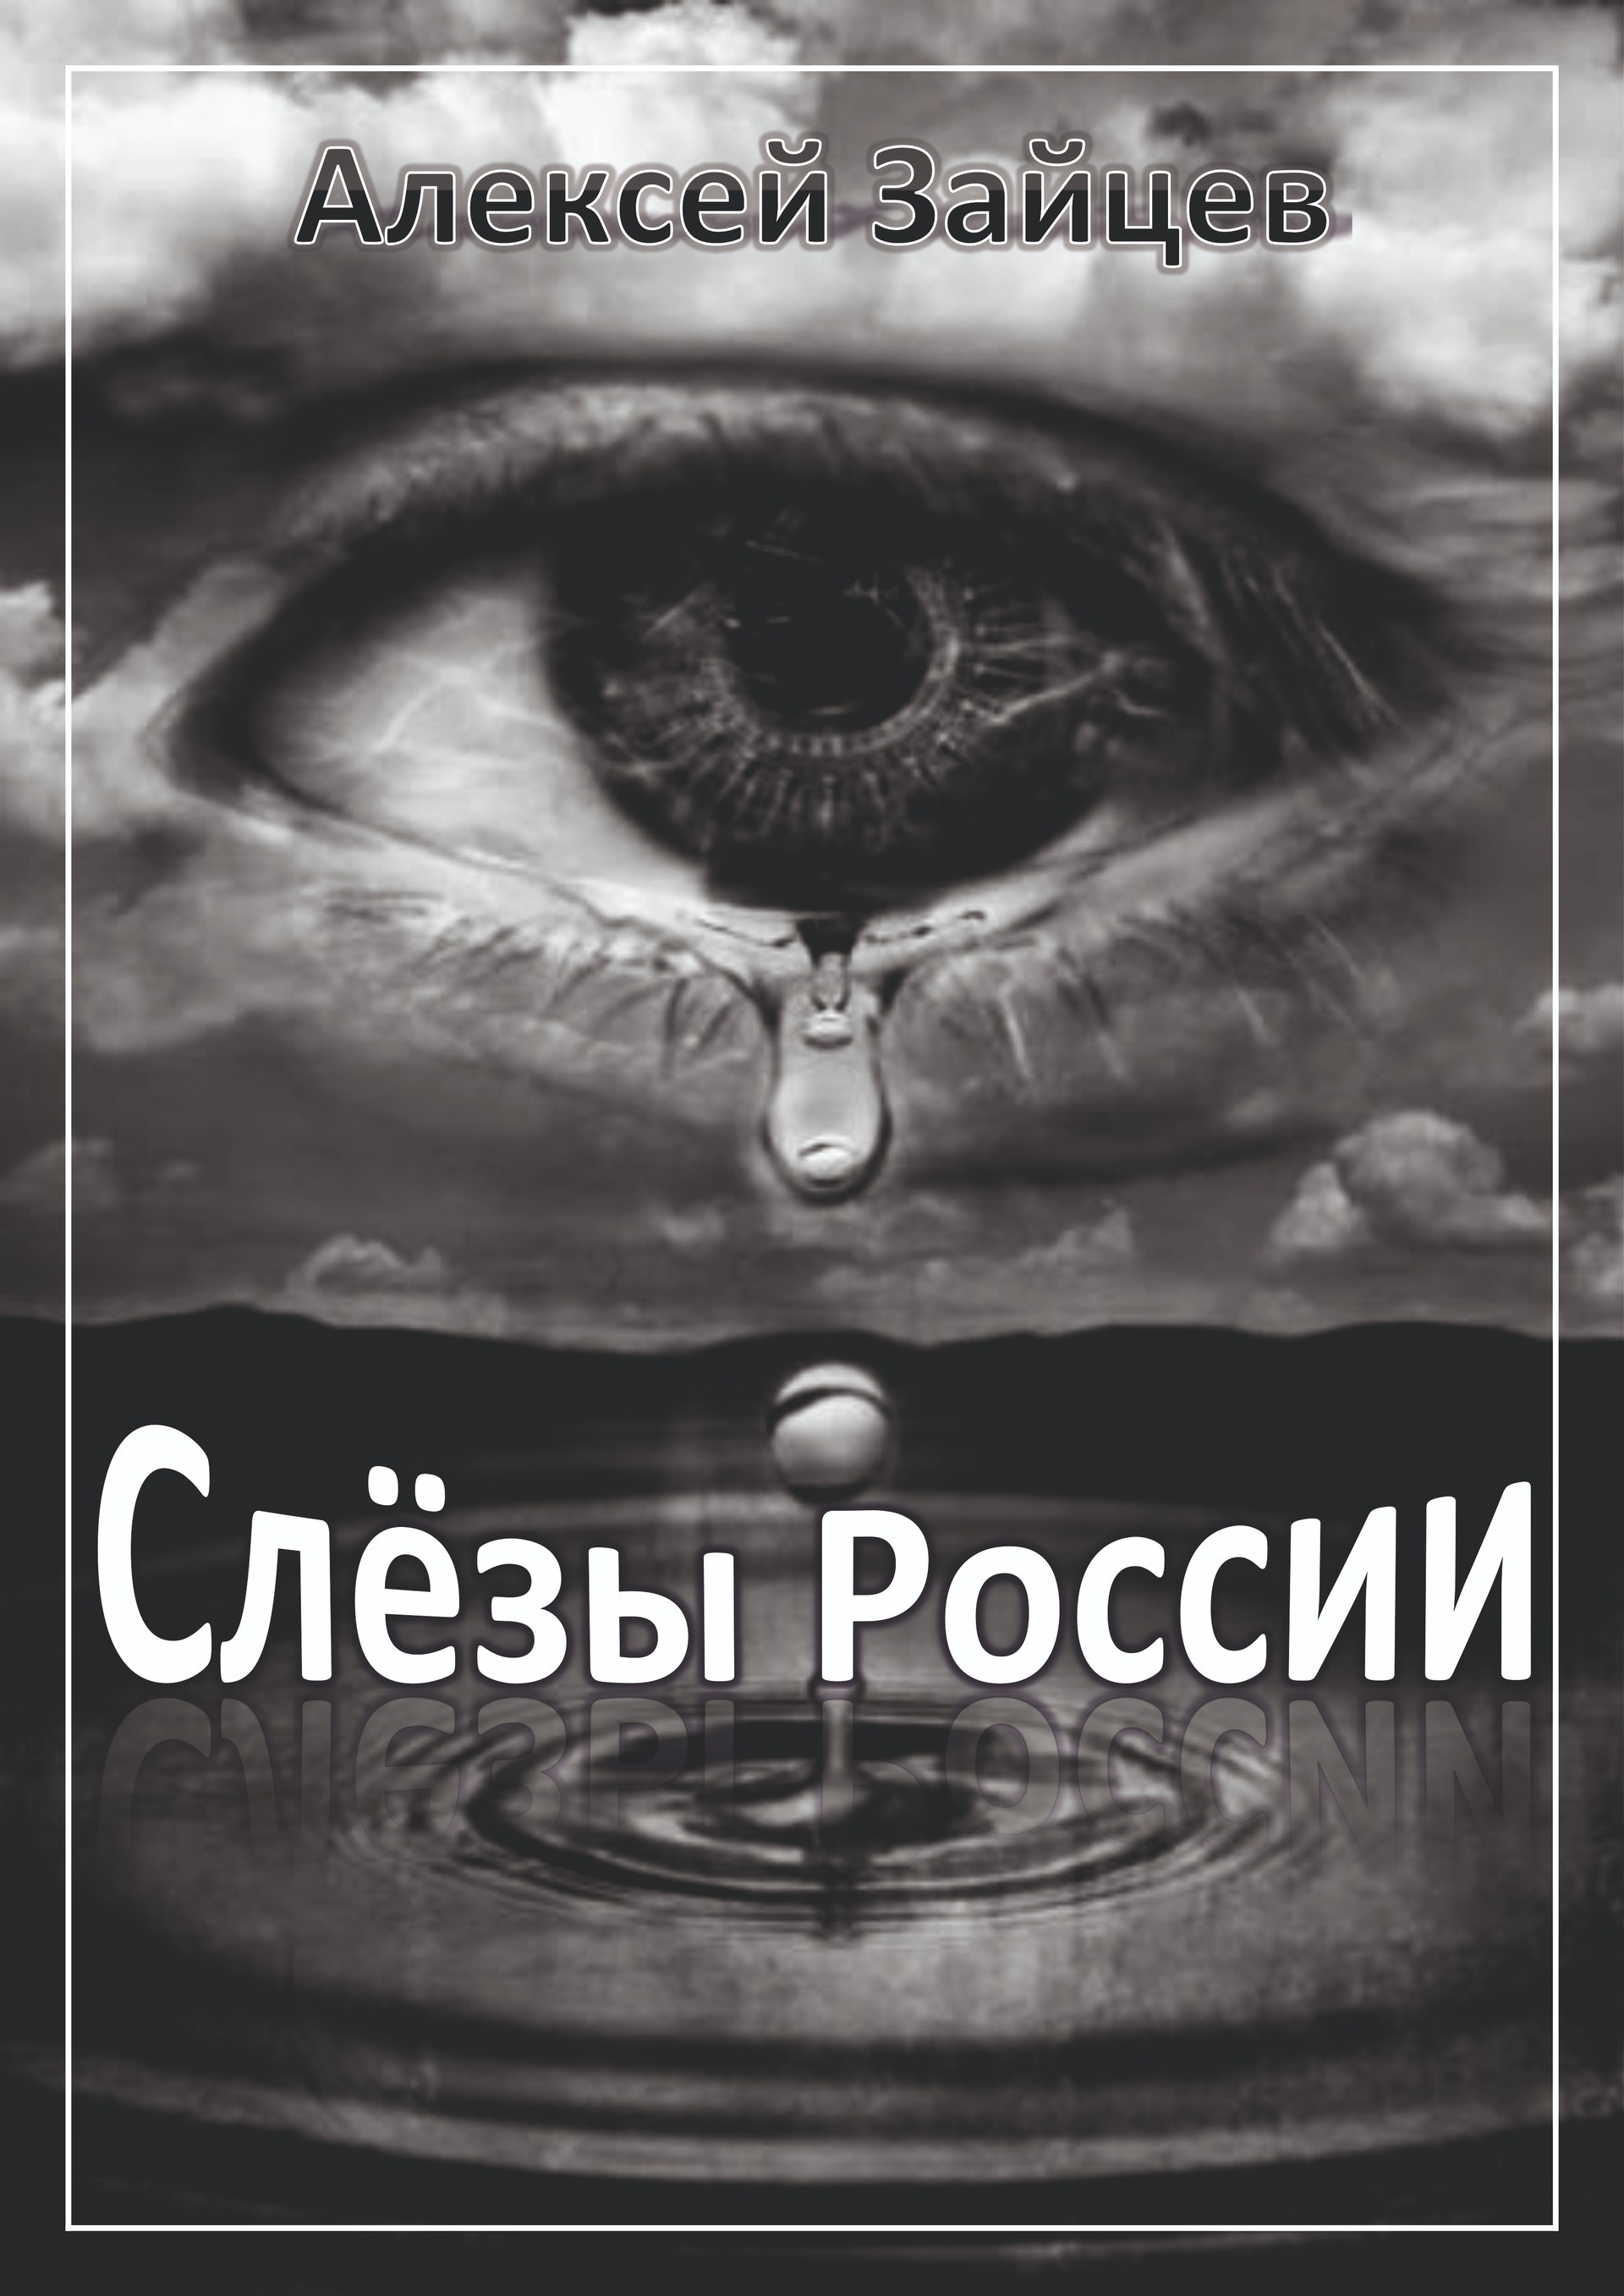 Читать книгу Алексея Зайцева "Слёзы России"